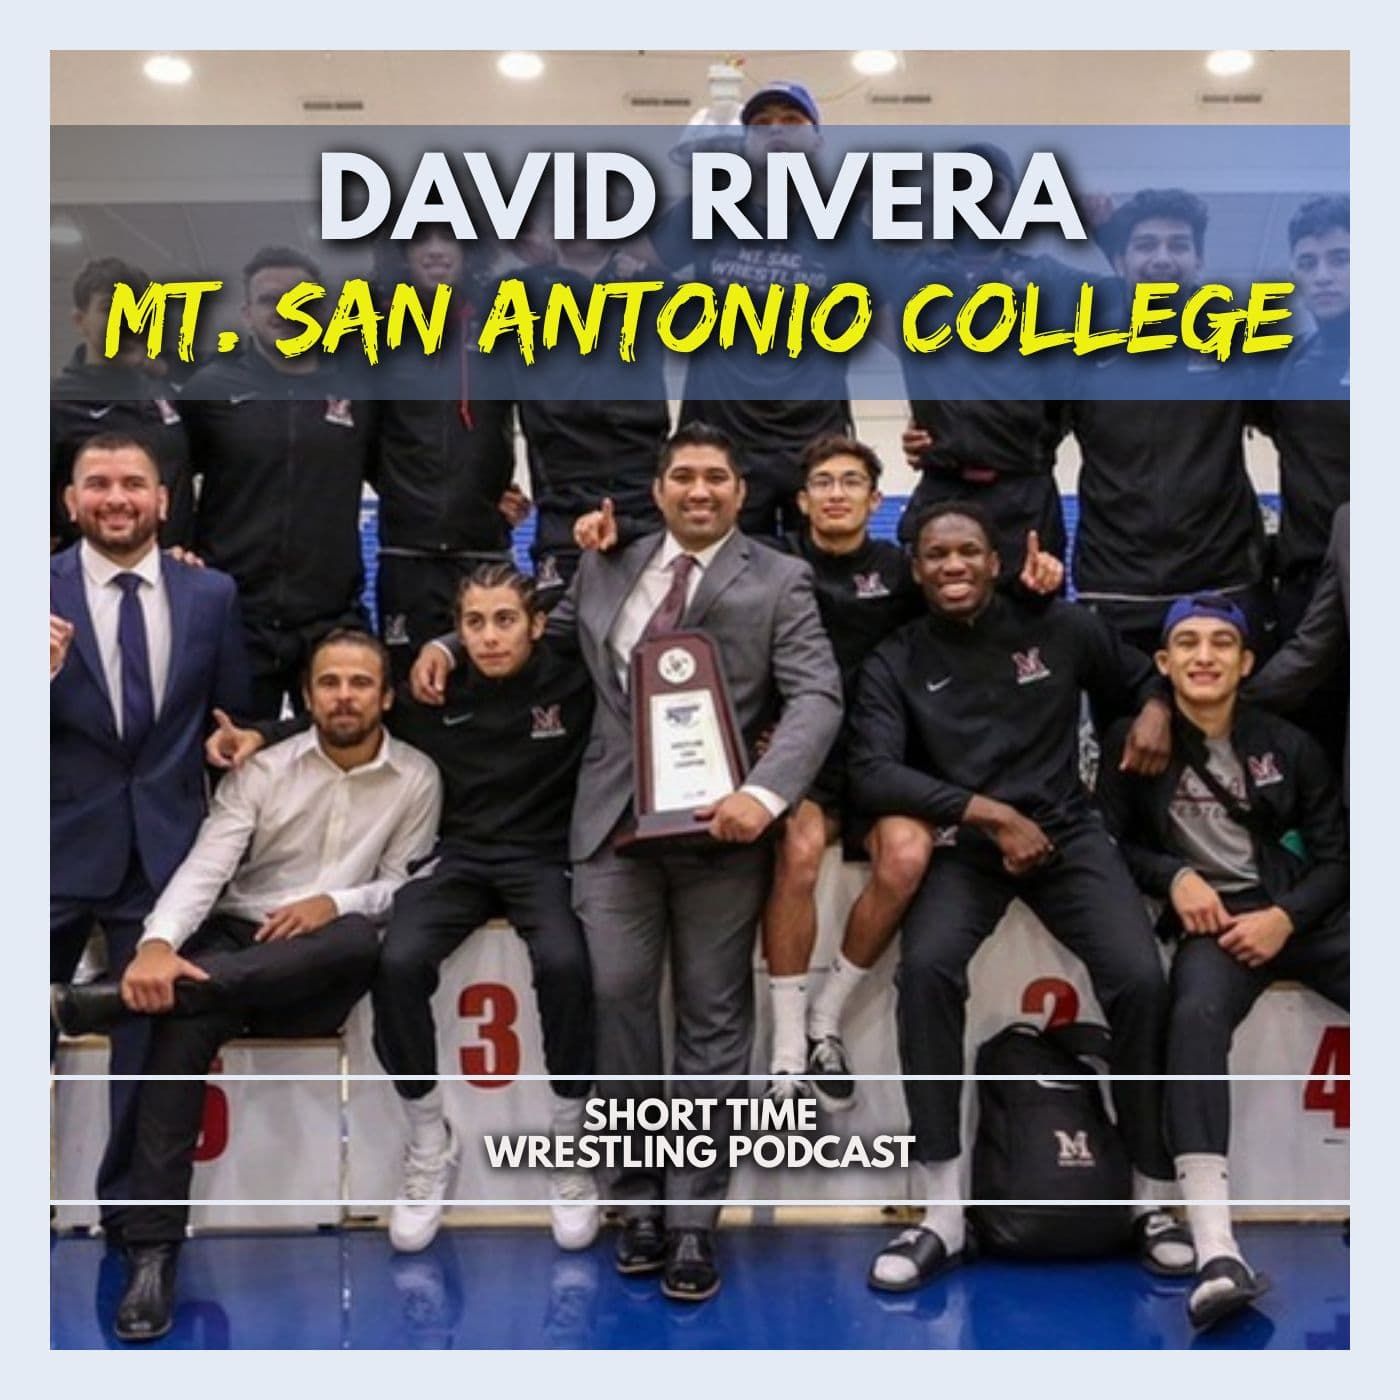 California Champs! Mt. San Antonio College head coach David Rivera